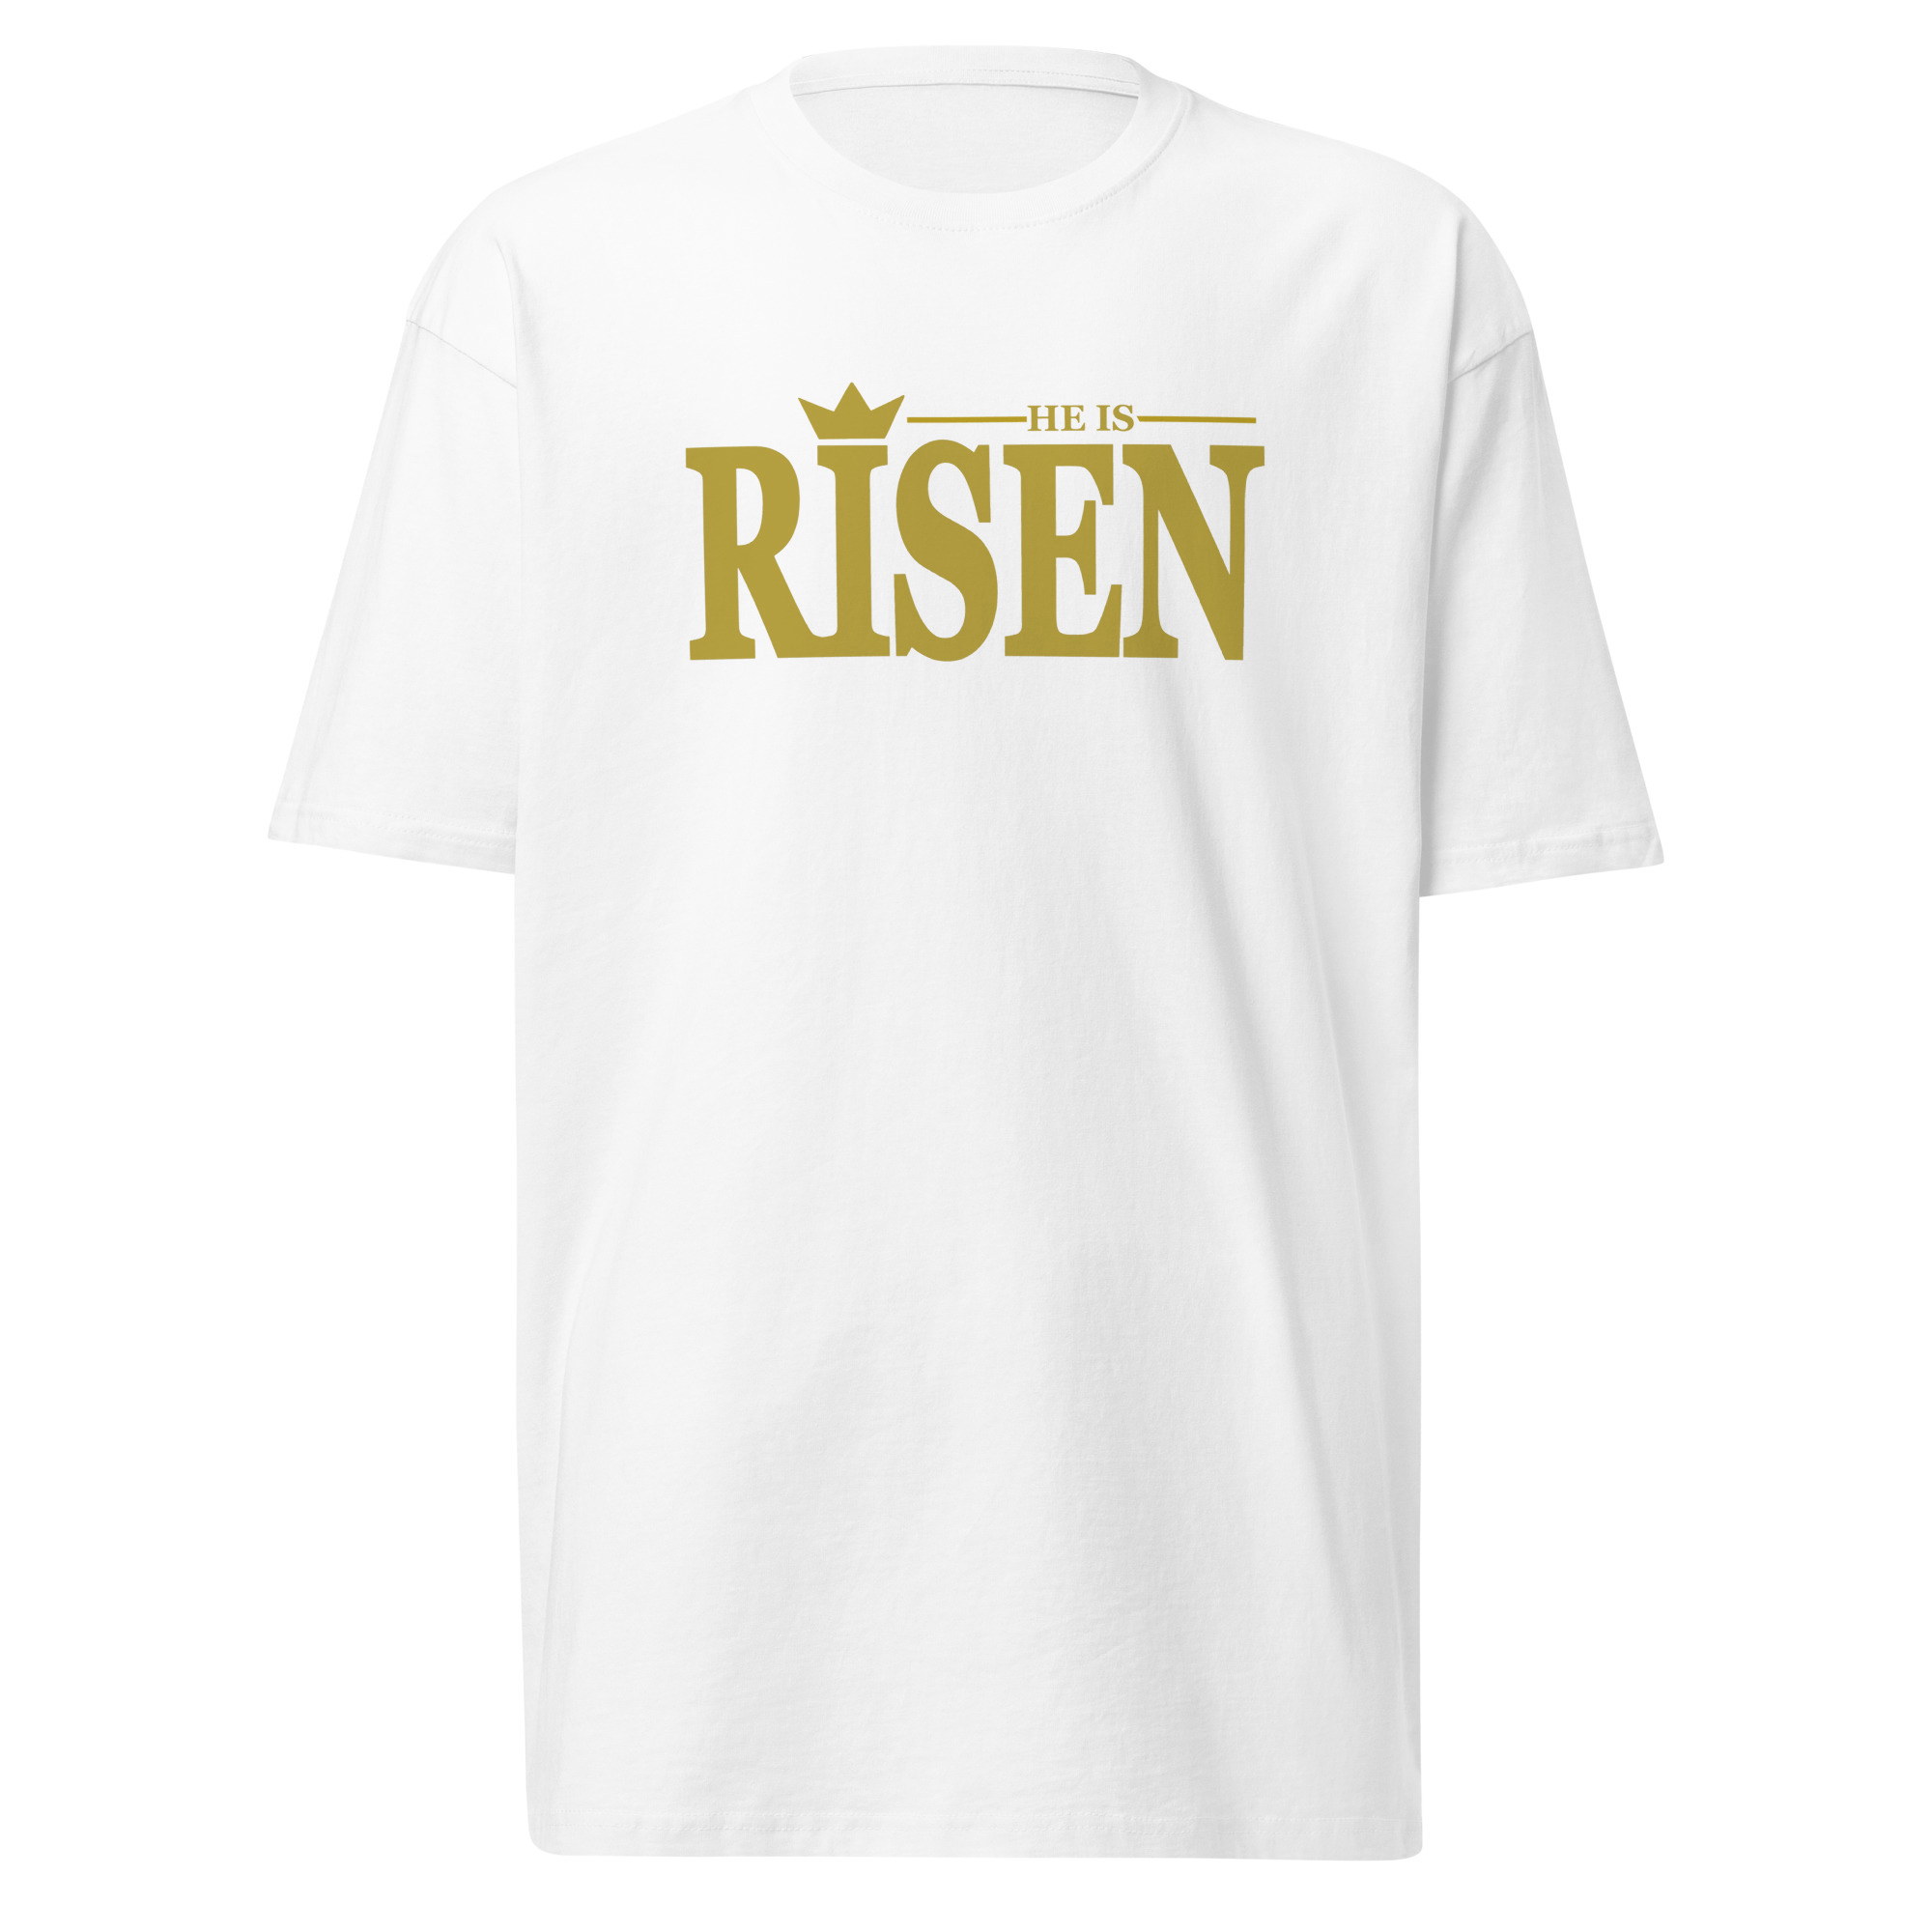 Risen T-Shirt - White / M